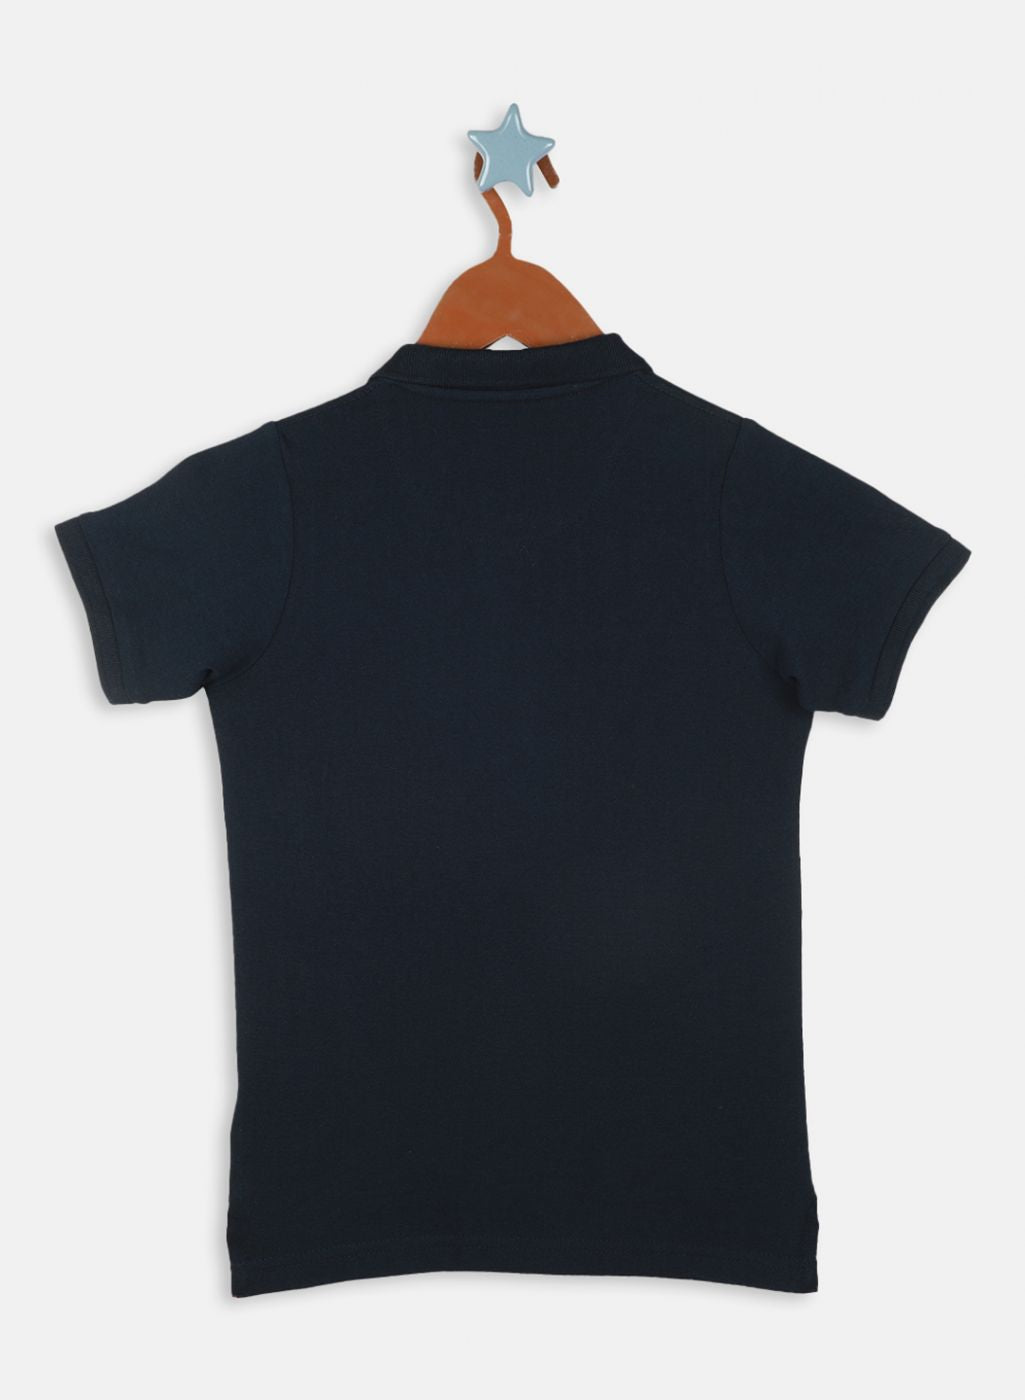 Boys NAvy Blue Printed T-Shirt